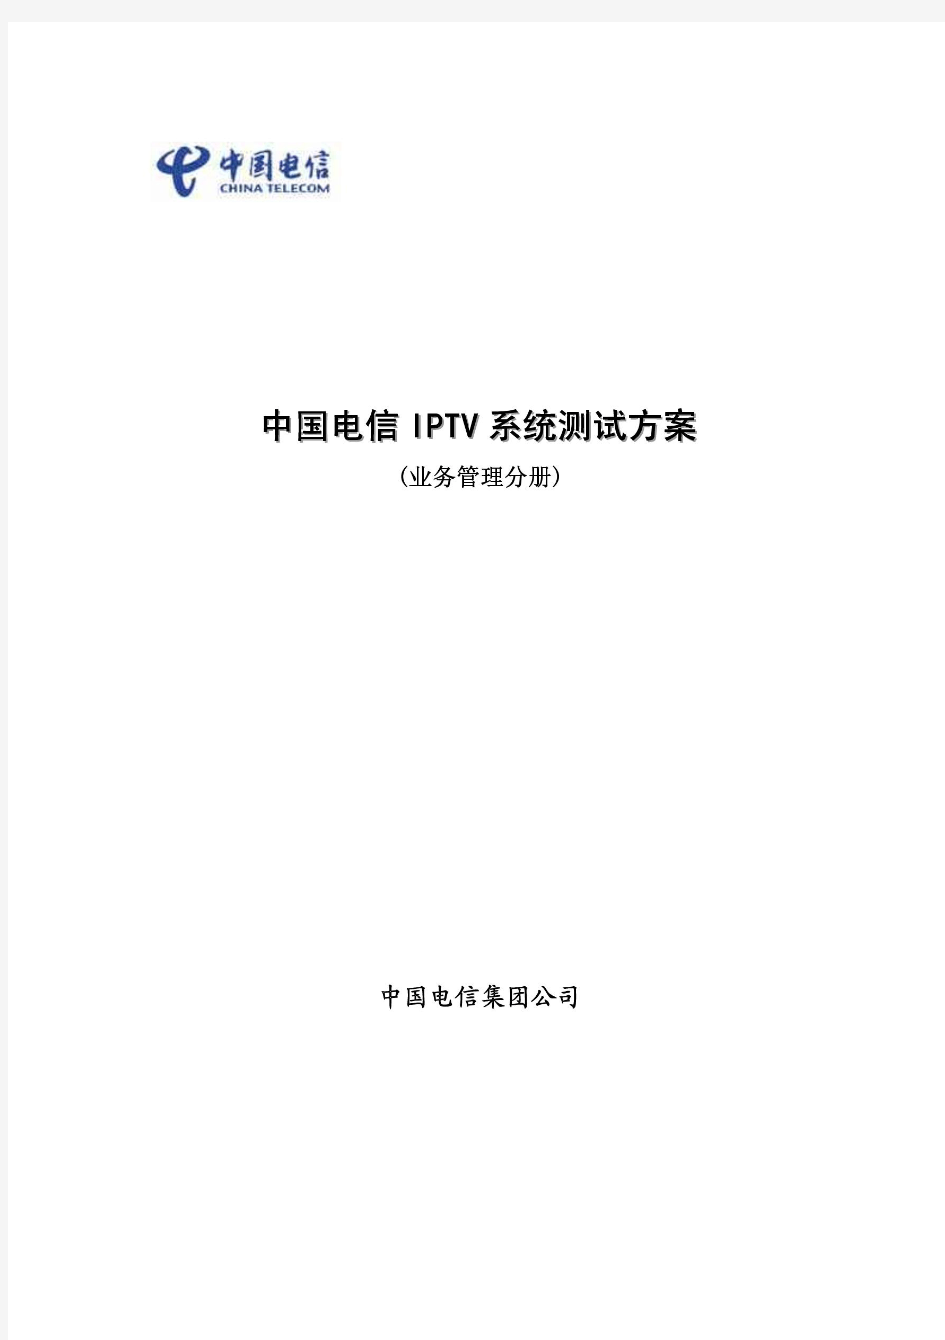 中国电信IPTV系统测试方案(业务管理分册)